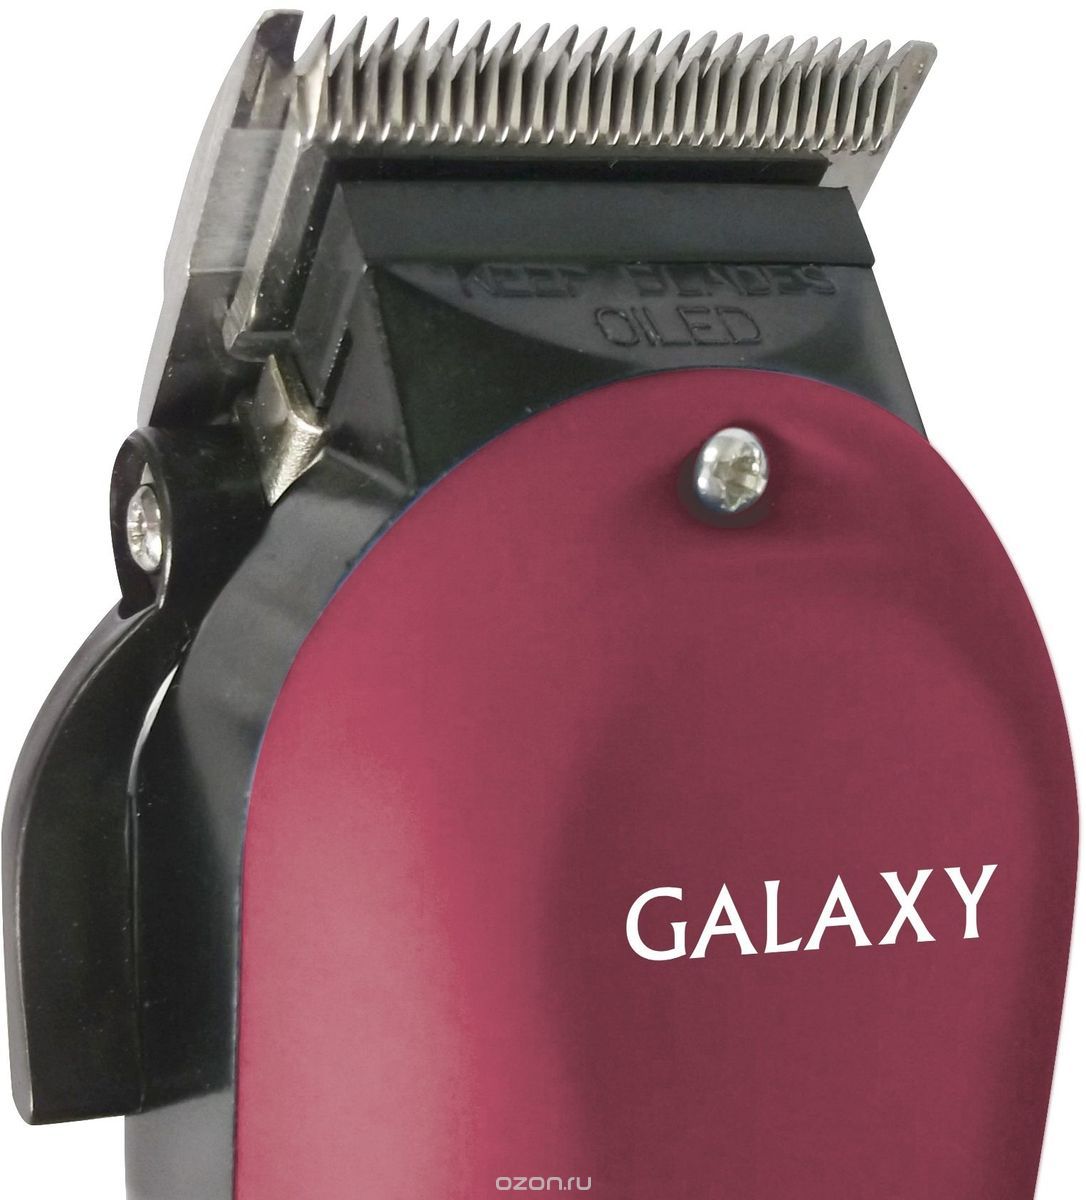    Galaxy GL 4104, Burgundy